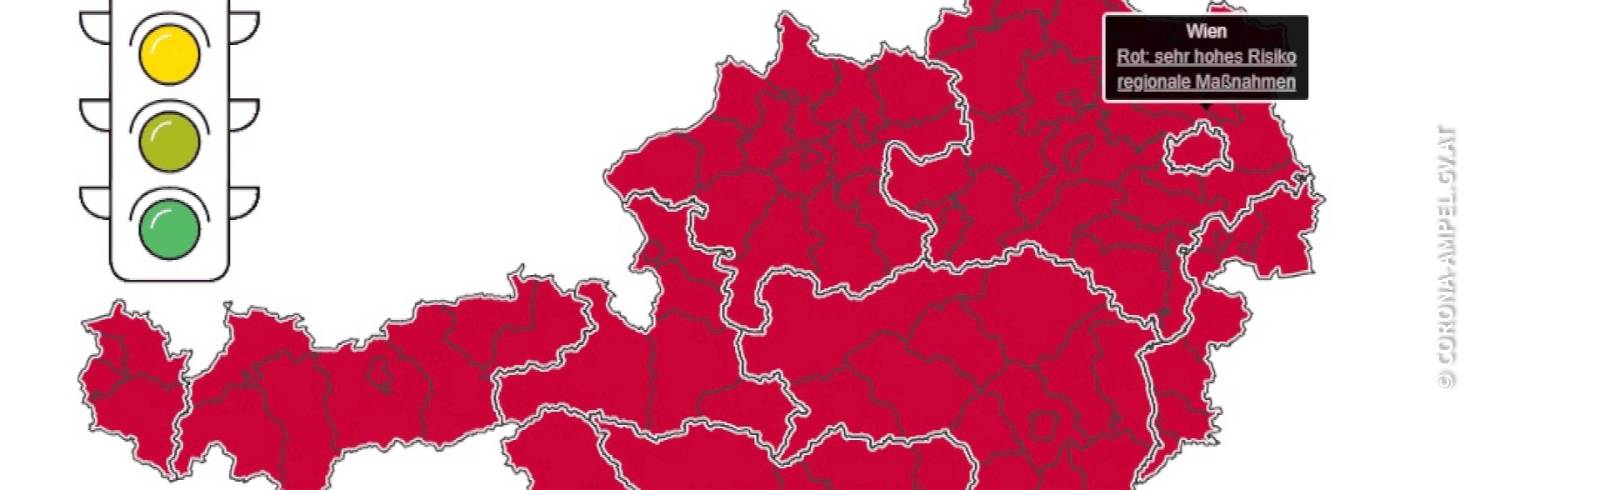 Rot: Jetzt auch in Wien und dem Burgenland